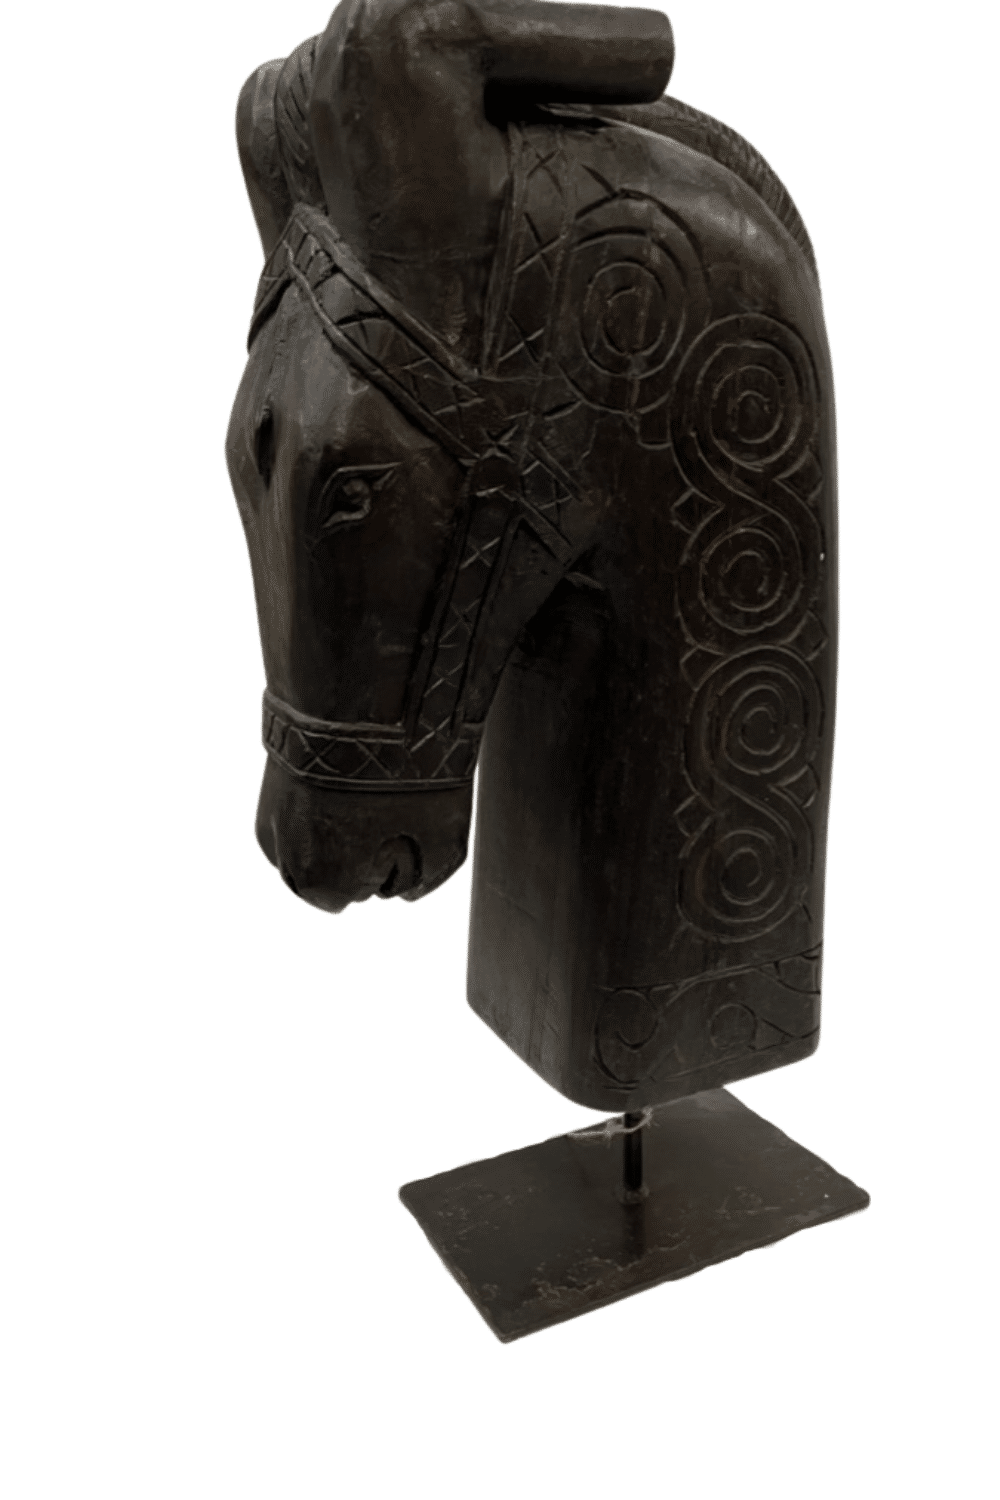 Zwart paarden hoofd op statief decoratie voor in een raamkozijn